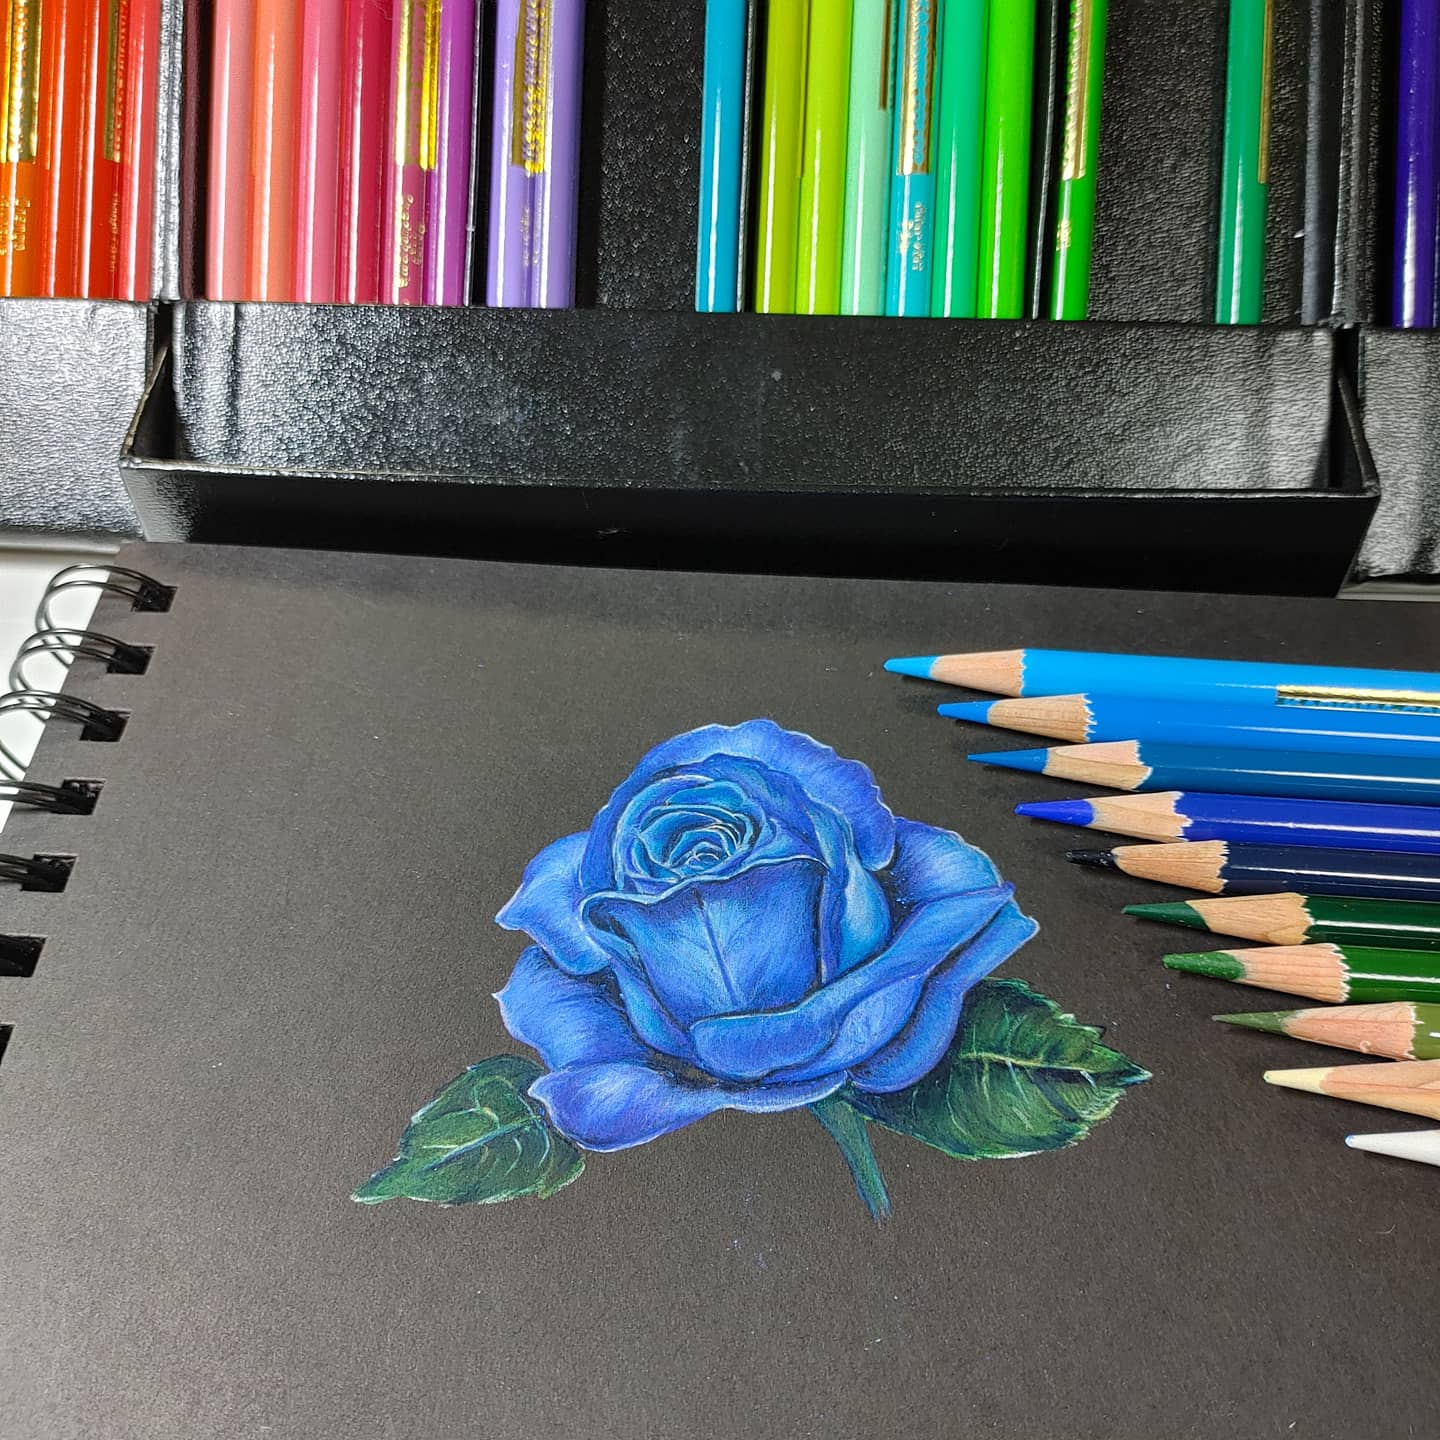 羊毛ちくちく Heart Leaf 色鉛筆画 青薔薇 フレームによってこんなにも印象が変わりました 花言葉 夢叶う 奇跡 花も花言葉も素敵な花です 絵描きさんと繋がりたい カリスマカラー ファーバーカステルポリクロモス